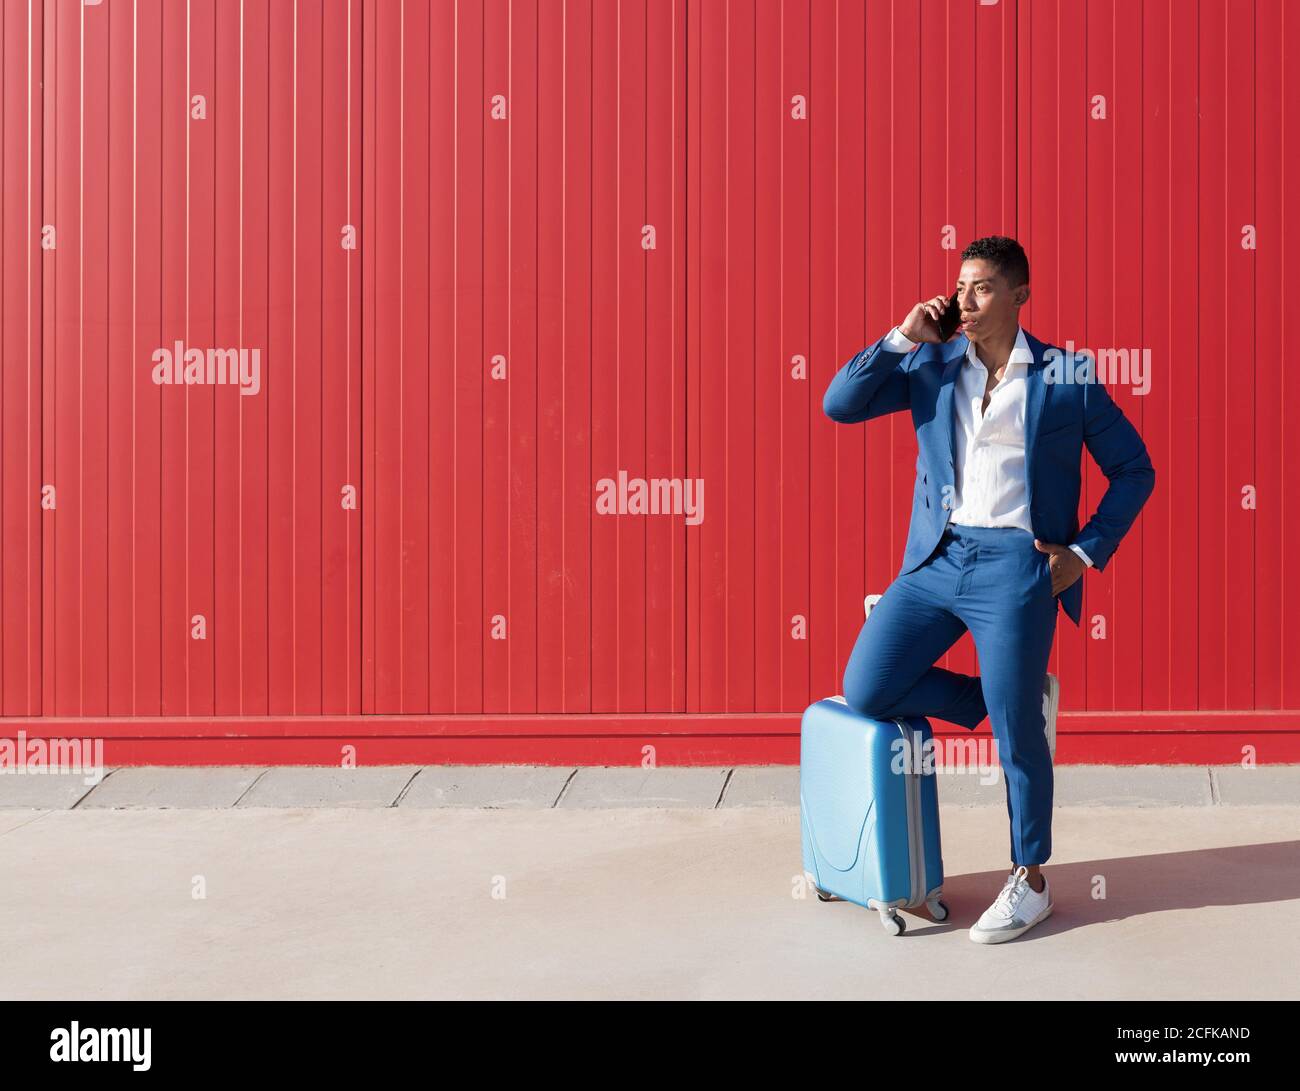 Ganzer Körper des jungen afroamerikanischen Mannes in elegantem Blau Anzug  mit Gepäcknachrichten auf dem Mobiltelefon, während Sie dagegen stehen Rote  Mauer auf der Straße Stockfotografie - Alamy